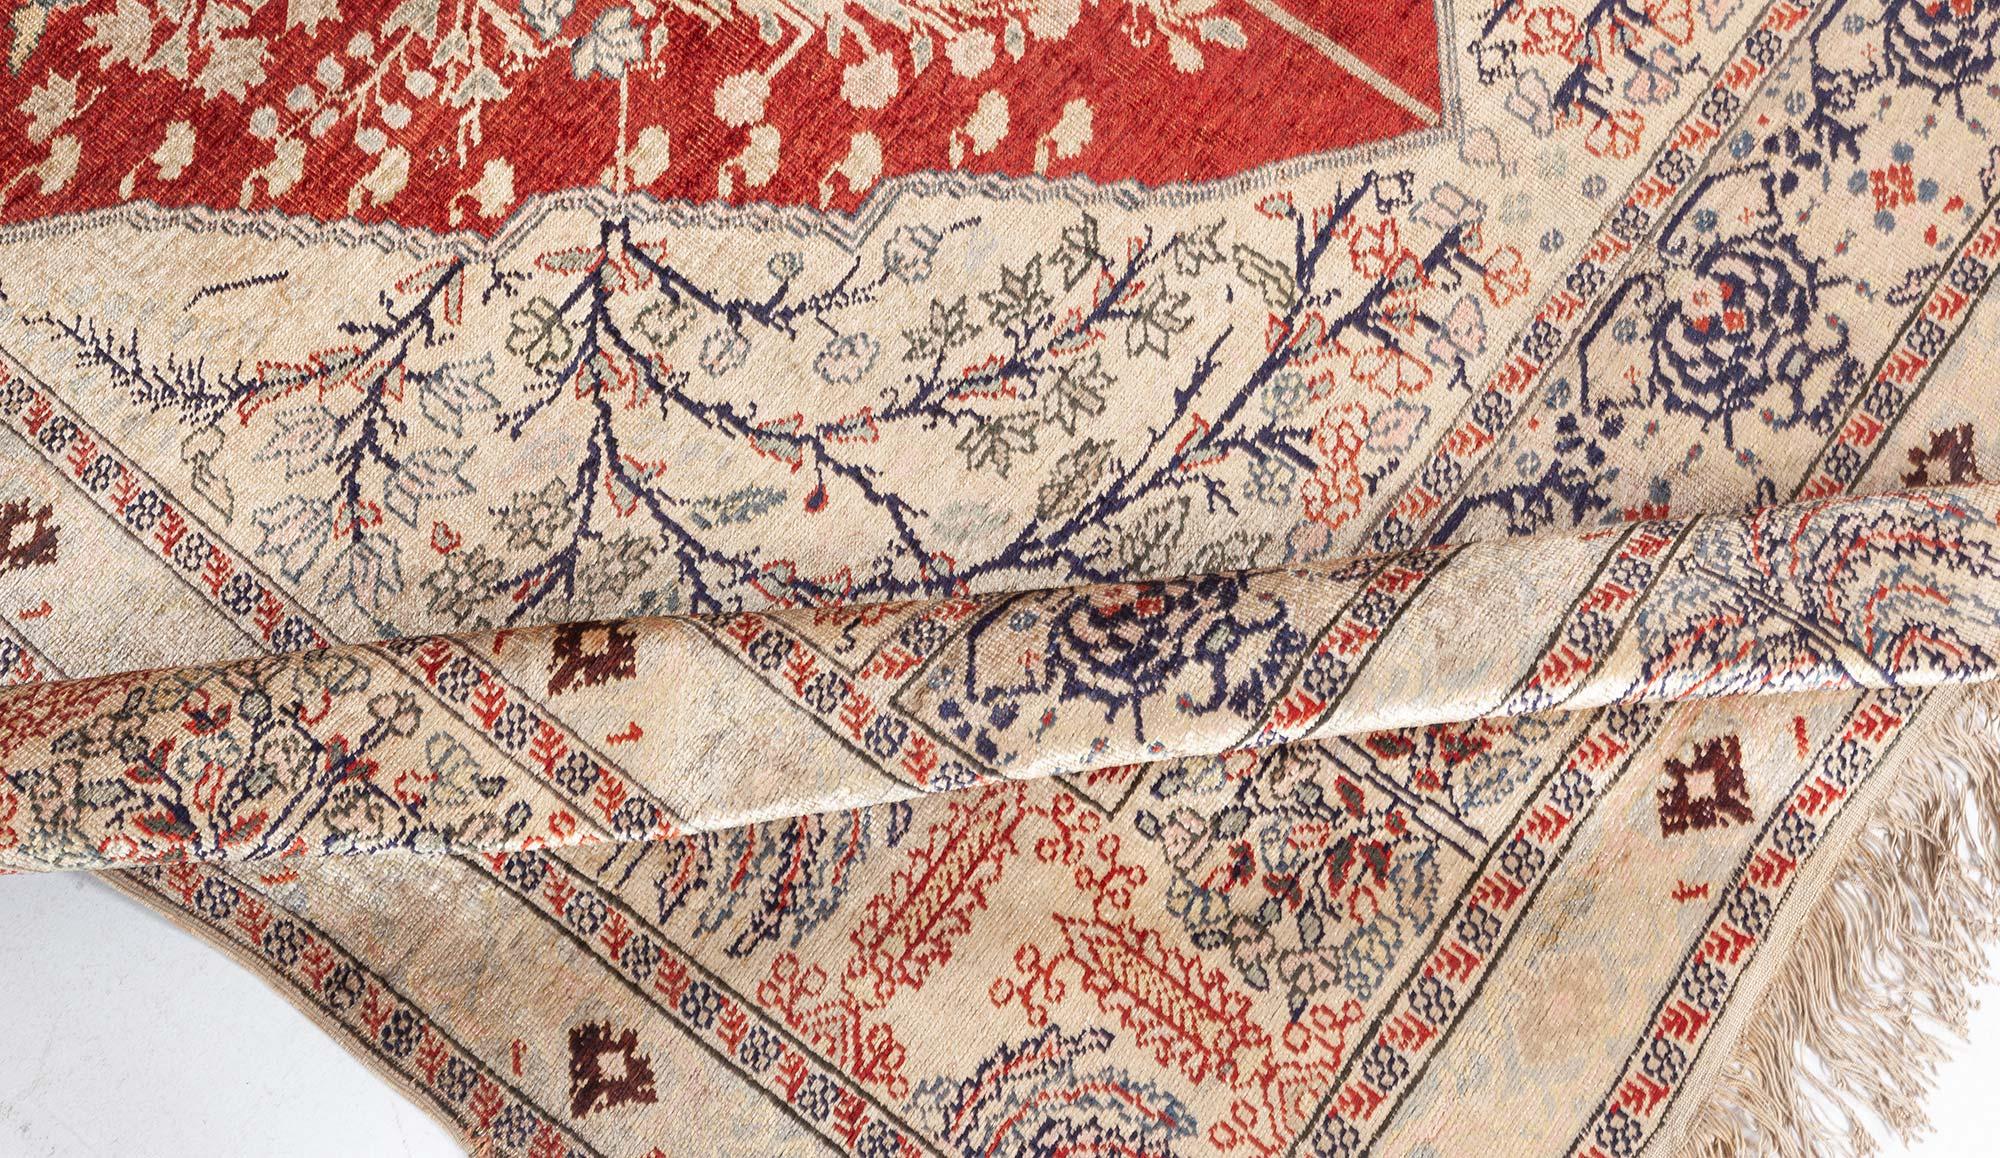 Türkischer Seidenteppich aus dem frühen 20. Jahrhundert, rubinrot, beige, grau und schwarz, handgefertigt
Größe: 6'0